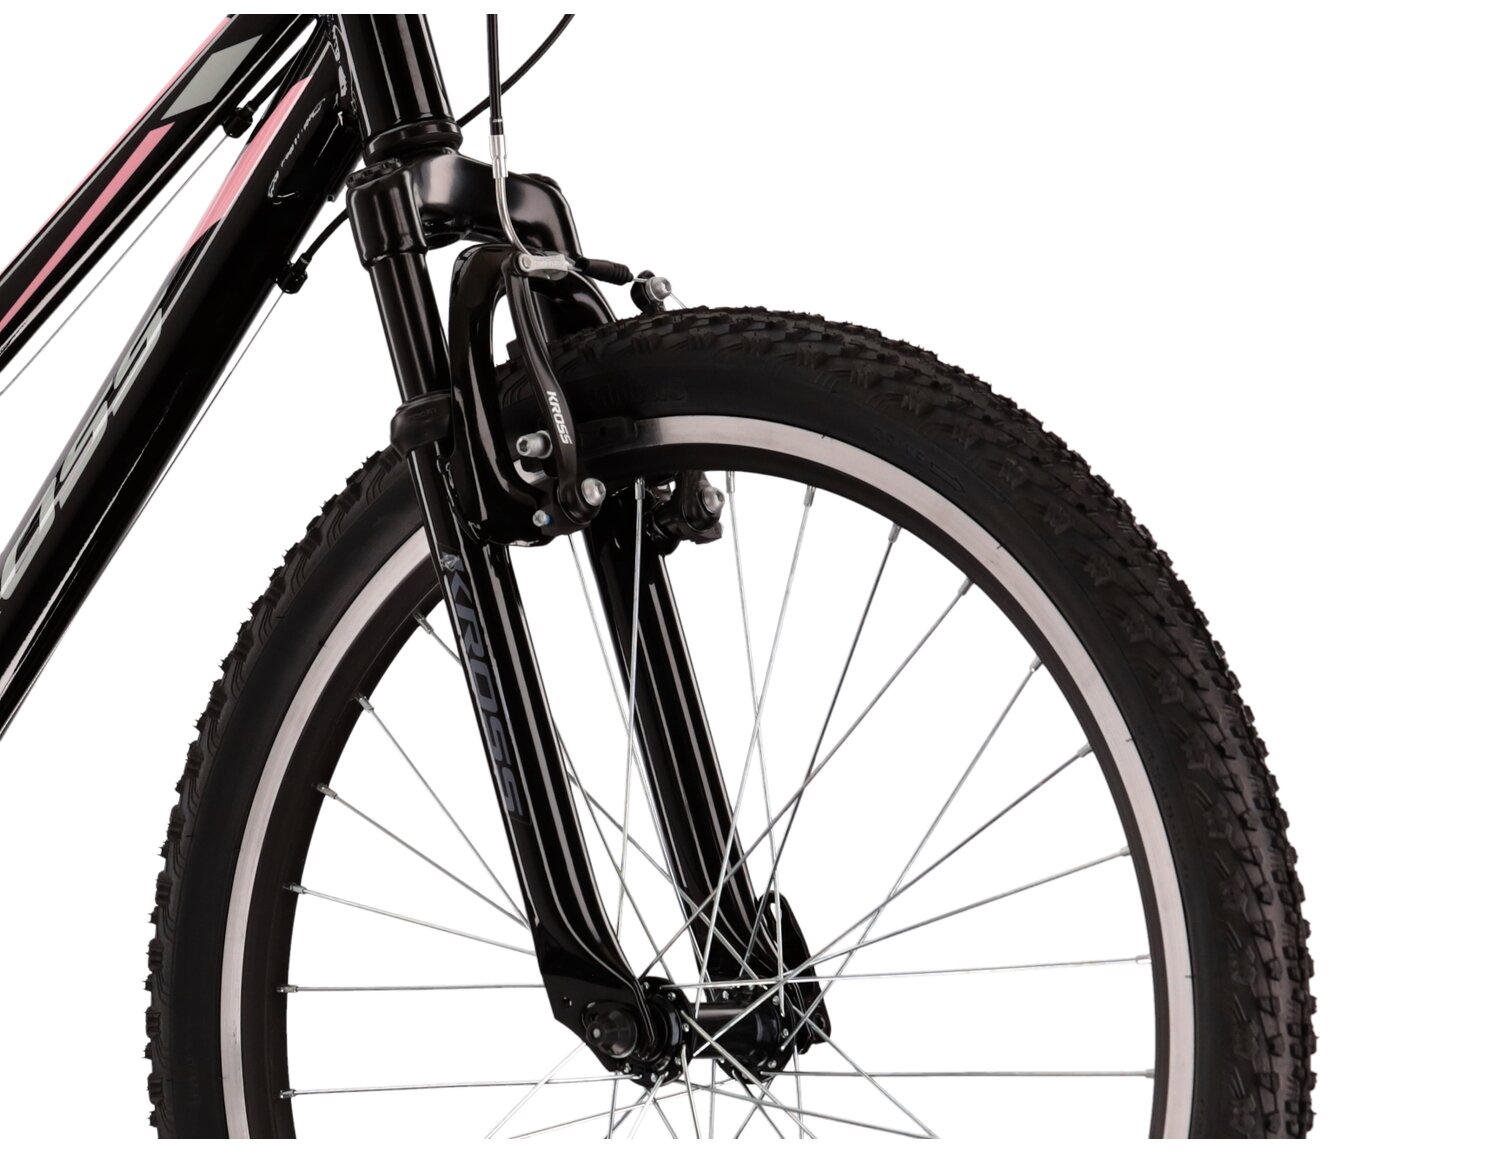  Aluminowa rama, amortyzowany widelec o skoku 40mm oraz opony o szerokości 1,95 cala w rowerze juniorskim KROSS Lea JR 1.0 